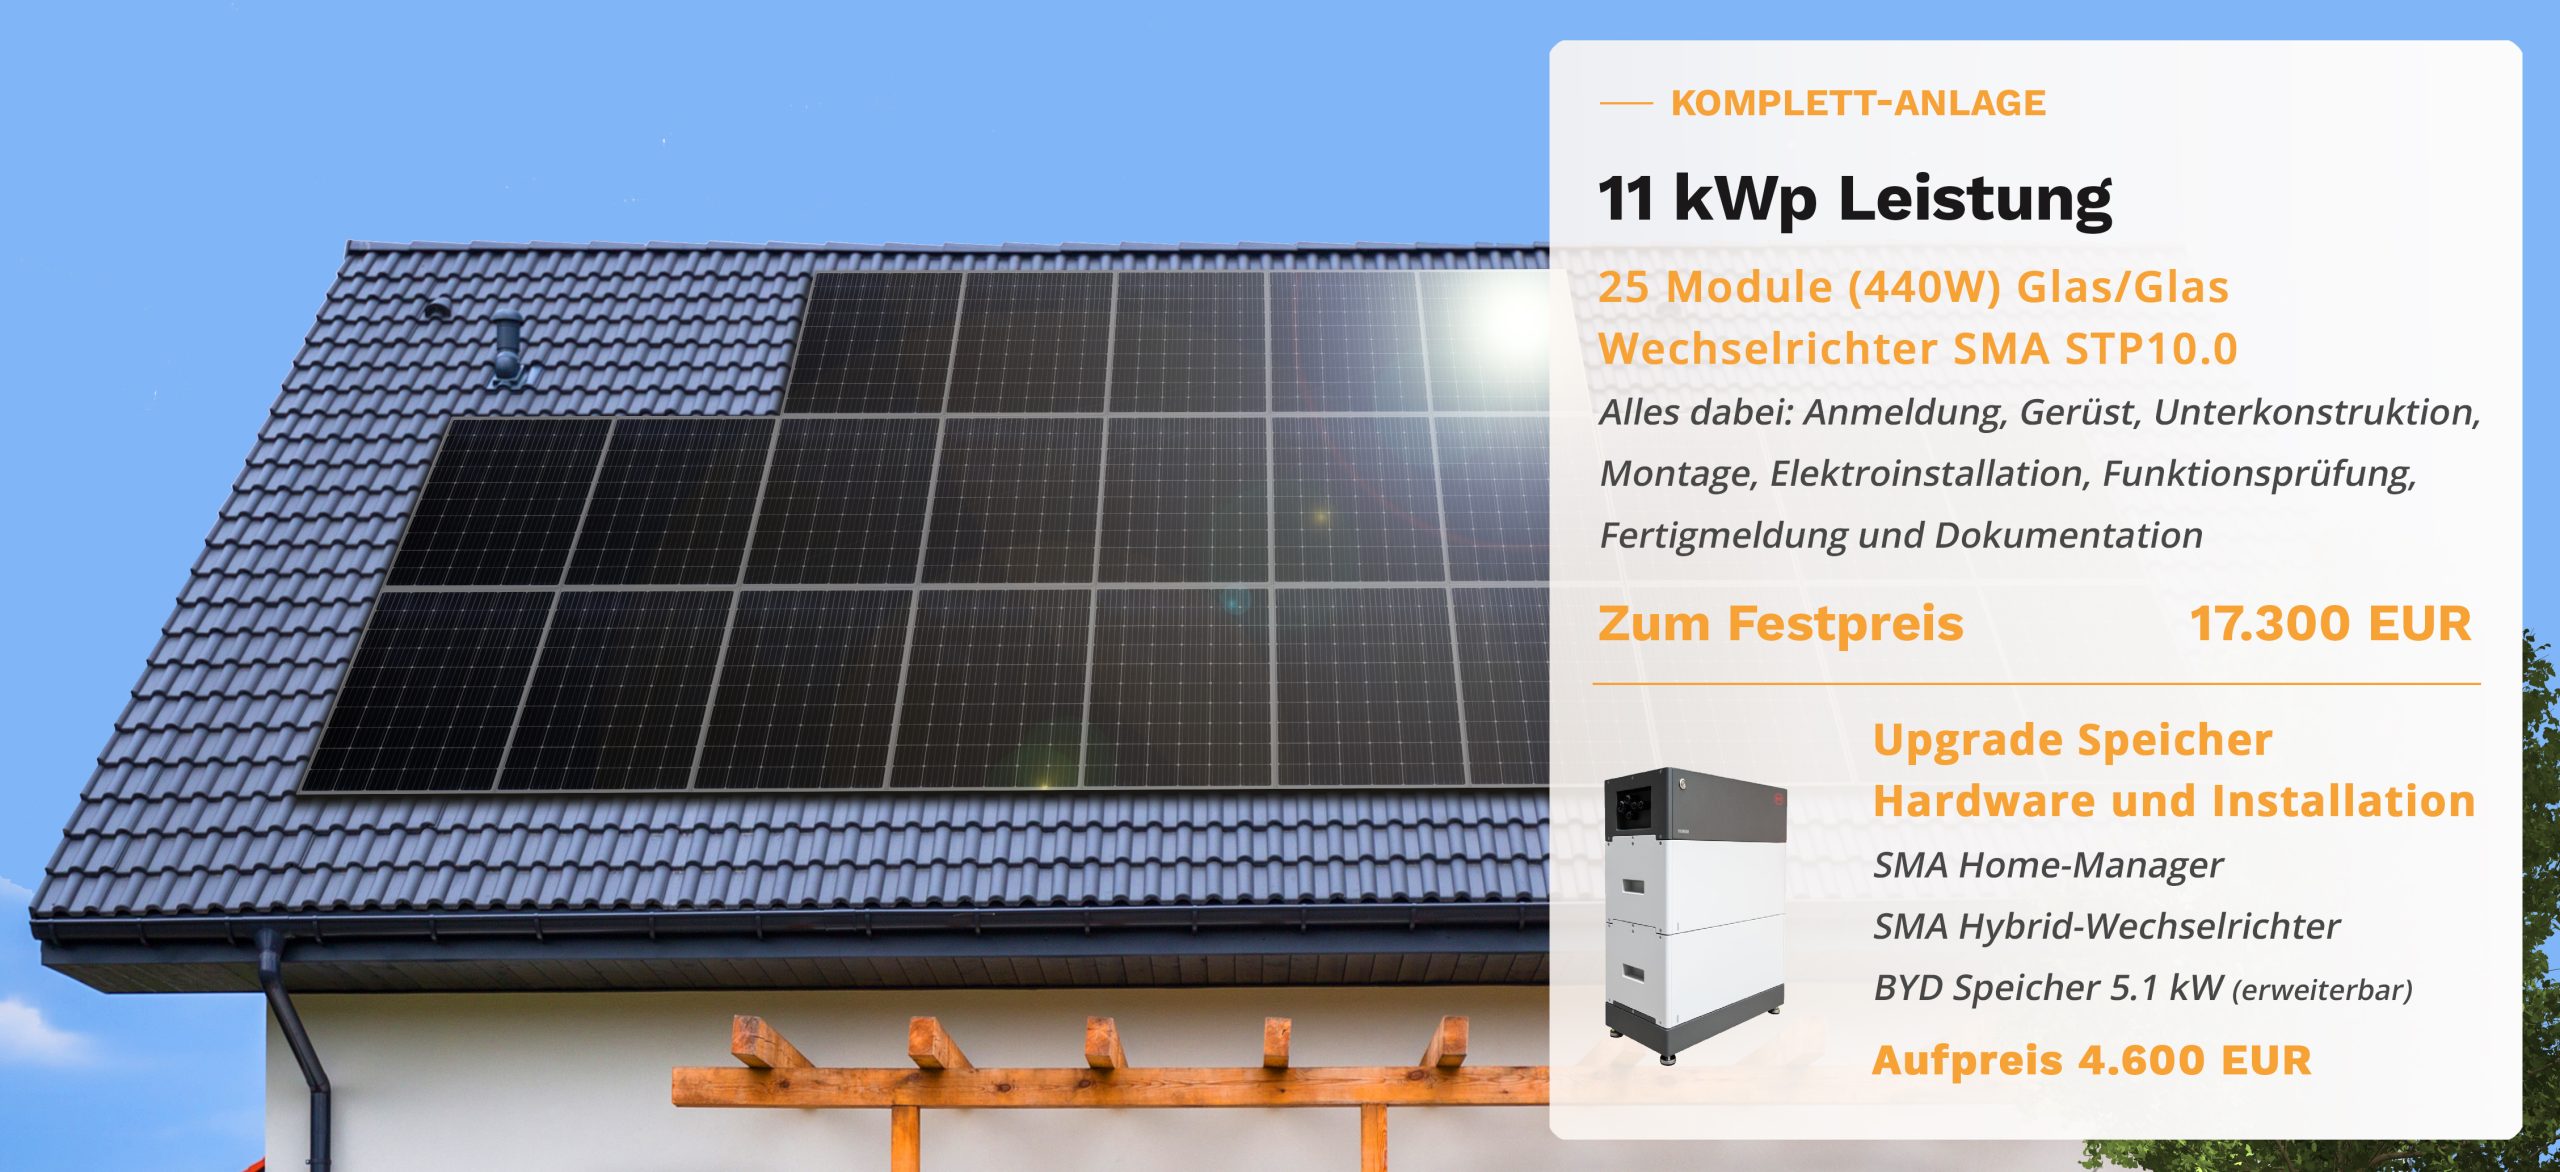 Preis für eine 11kWp Photovoltaik Anlage 17300 Euro
